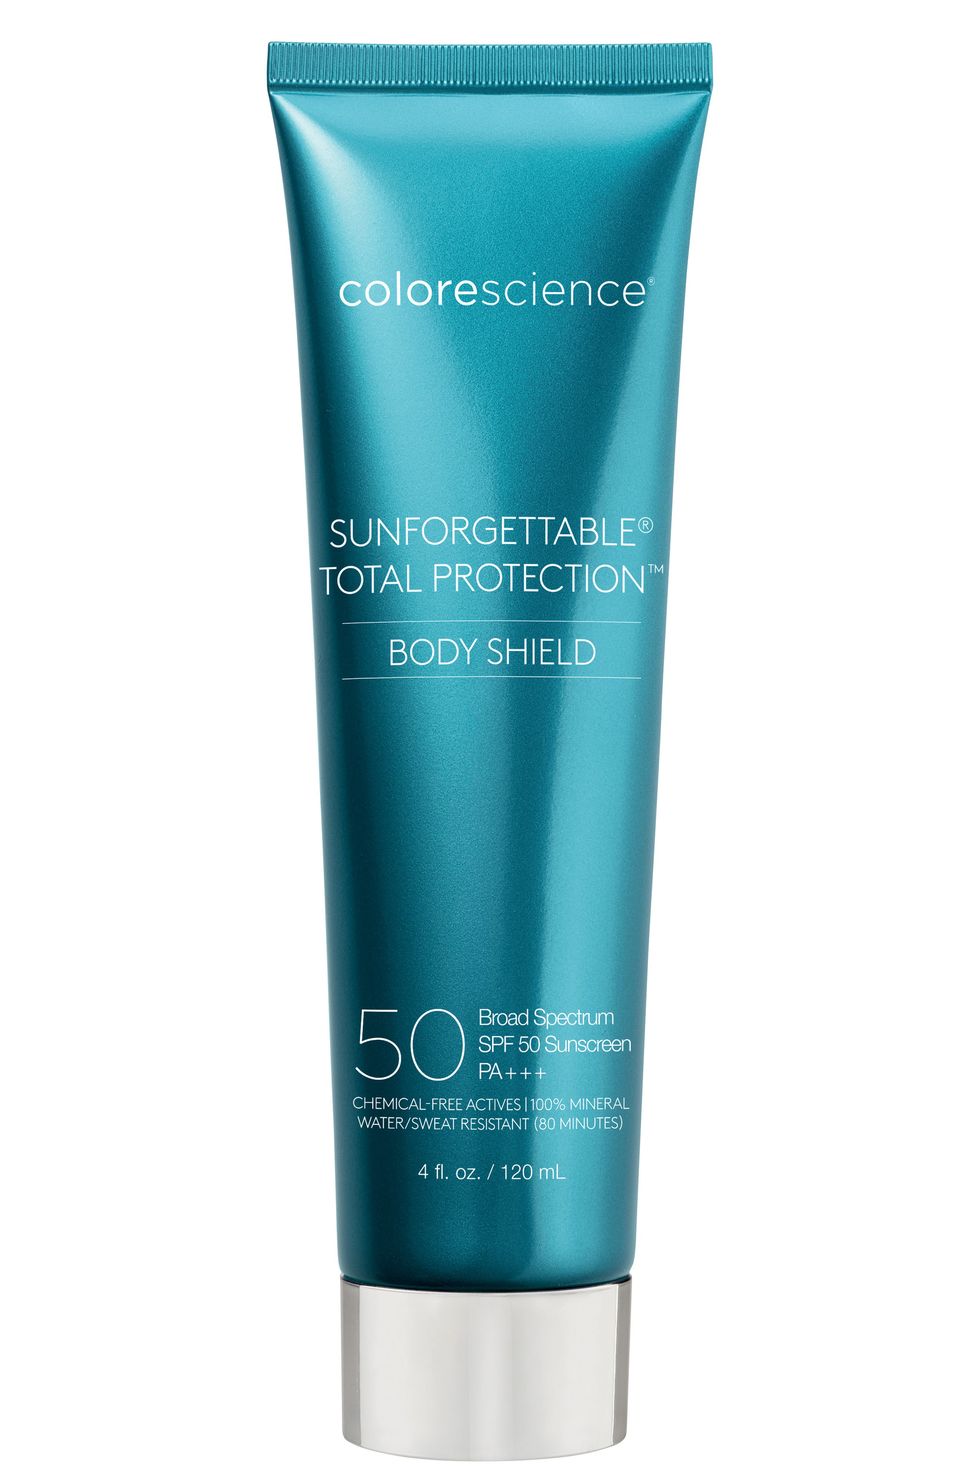 Colorescience Sunforgettable Body Shield Sunscreen